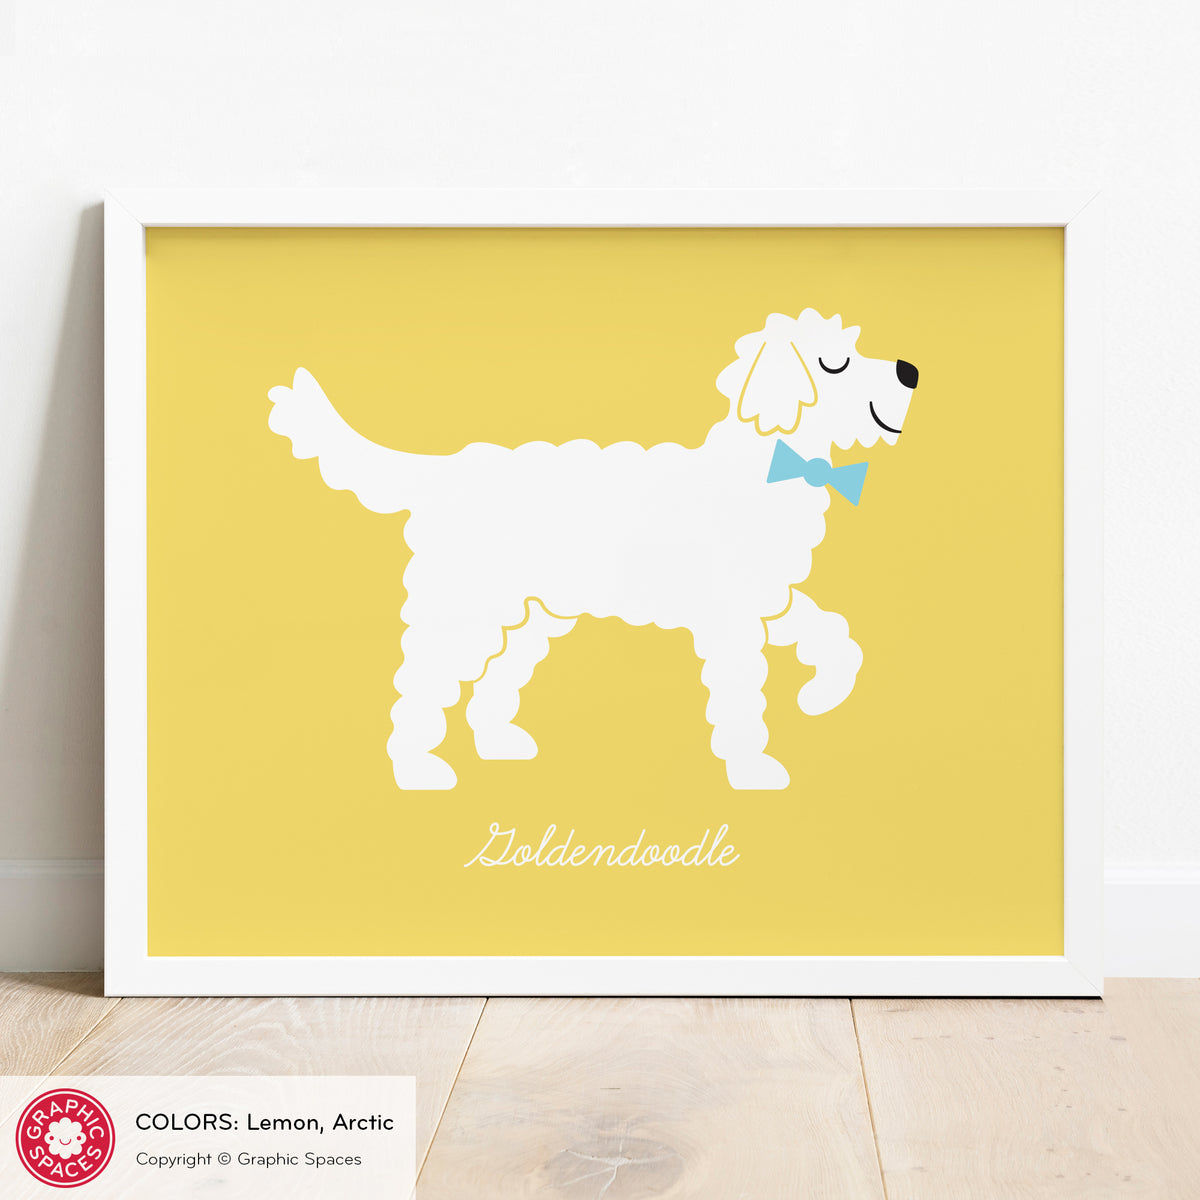 Goldendoodle Dog Art Print